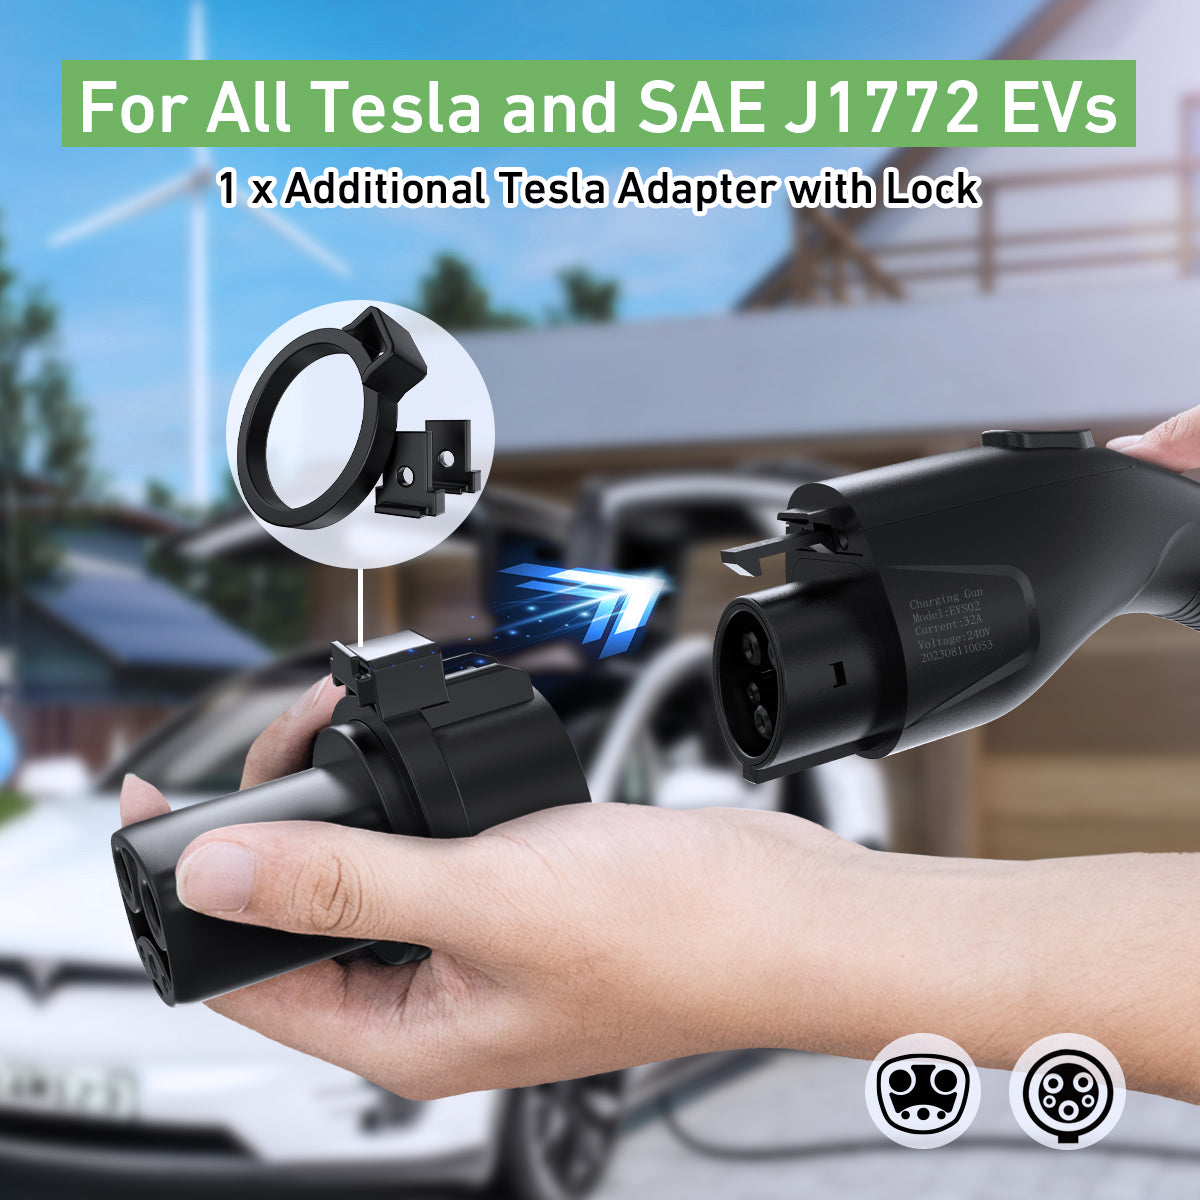 Level 1 & 2 32A 240V Portable EV Charger for J1772 & Tesla